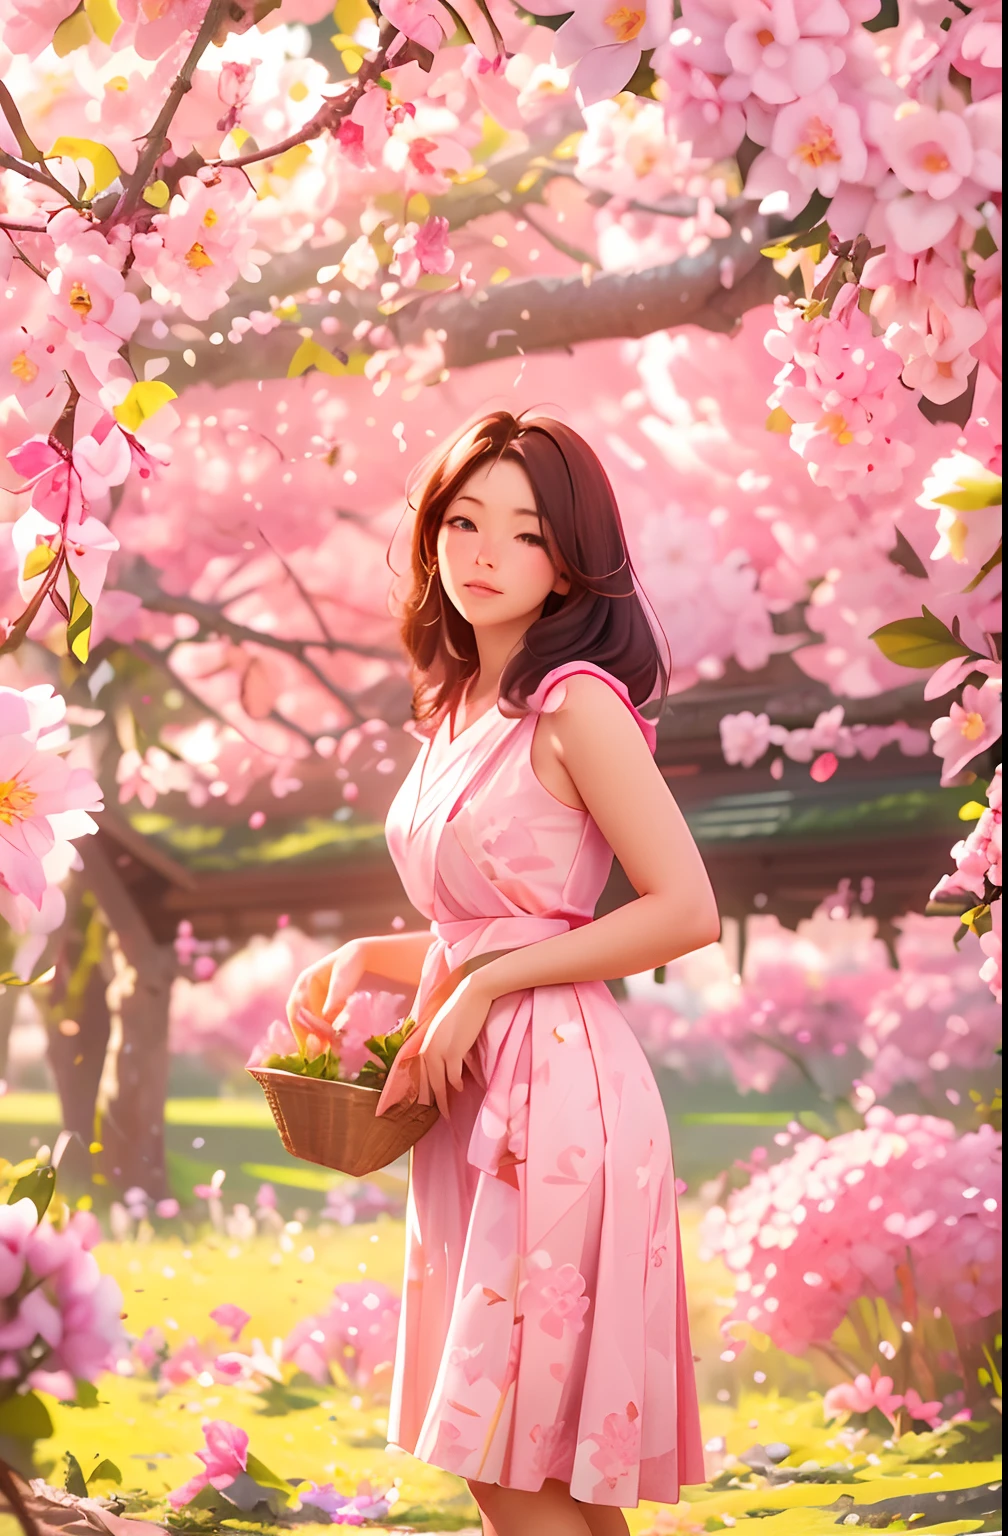 桜の花を摘む美しい30歳の農家の女性, 立ち姿勢, ピンクと白の日本の群れを身に着けている, 女性形, 枝にはたくさんの桜の花が咲いている, 朝の光